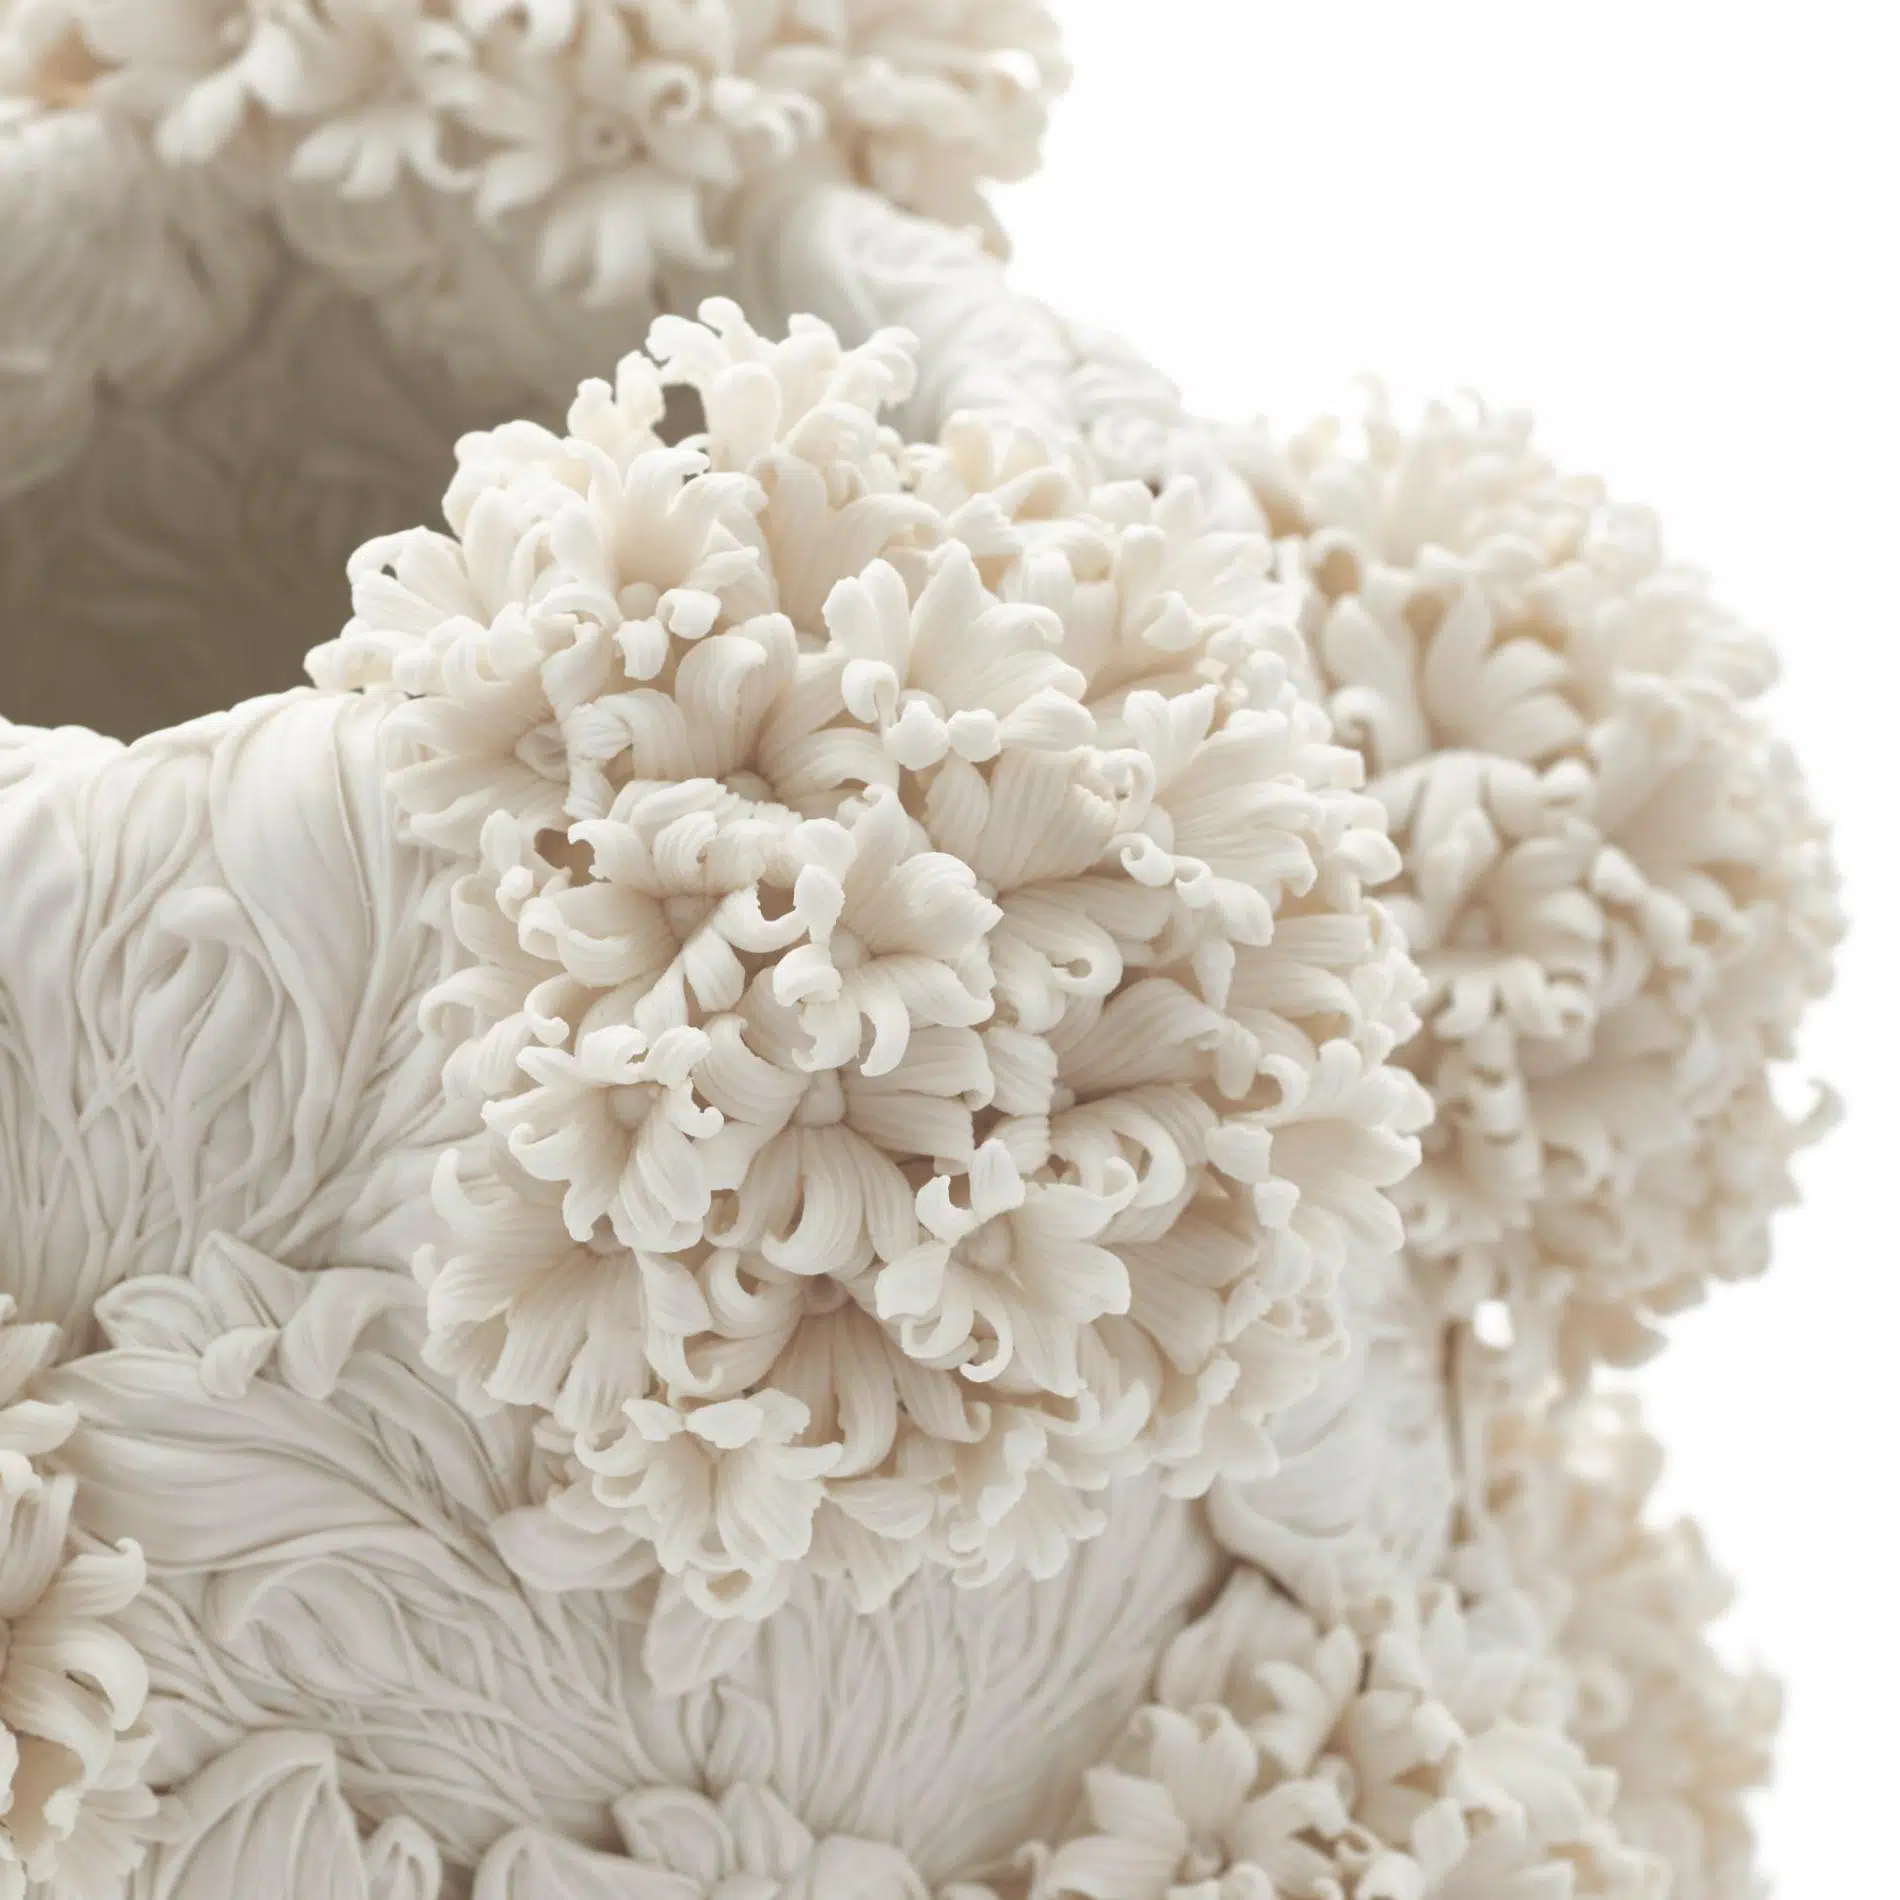 petalos de flores detalaldos en la obra de ceramica de hitomi hosono